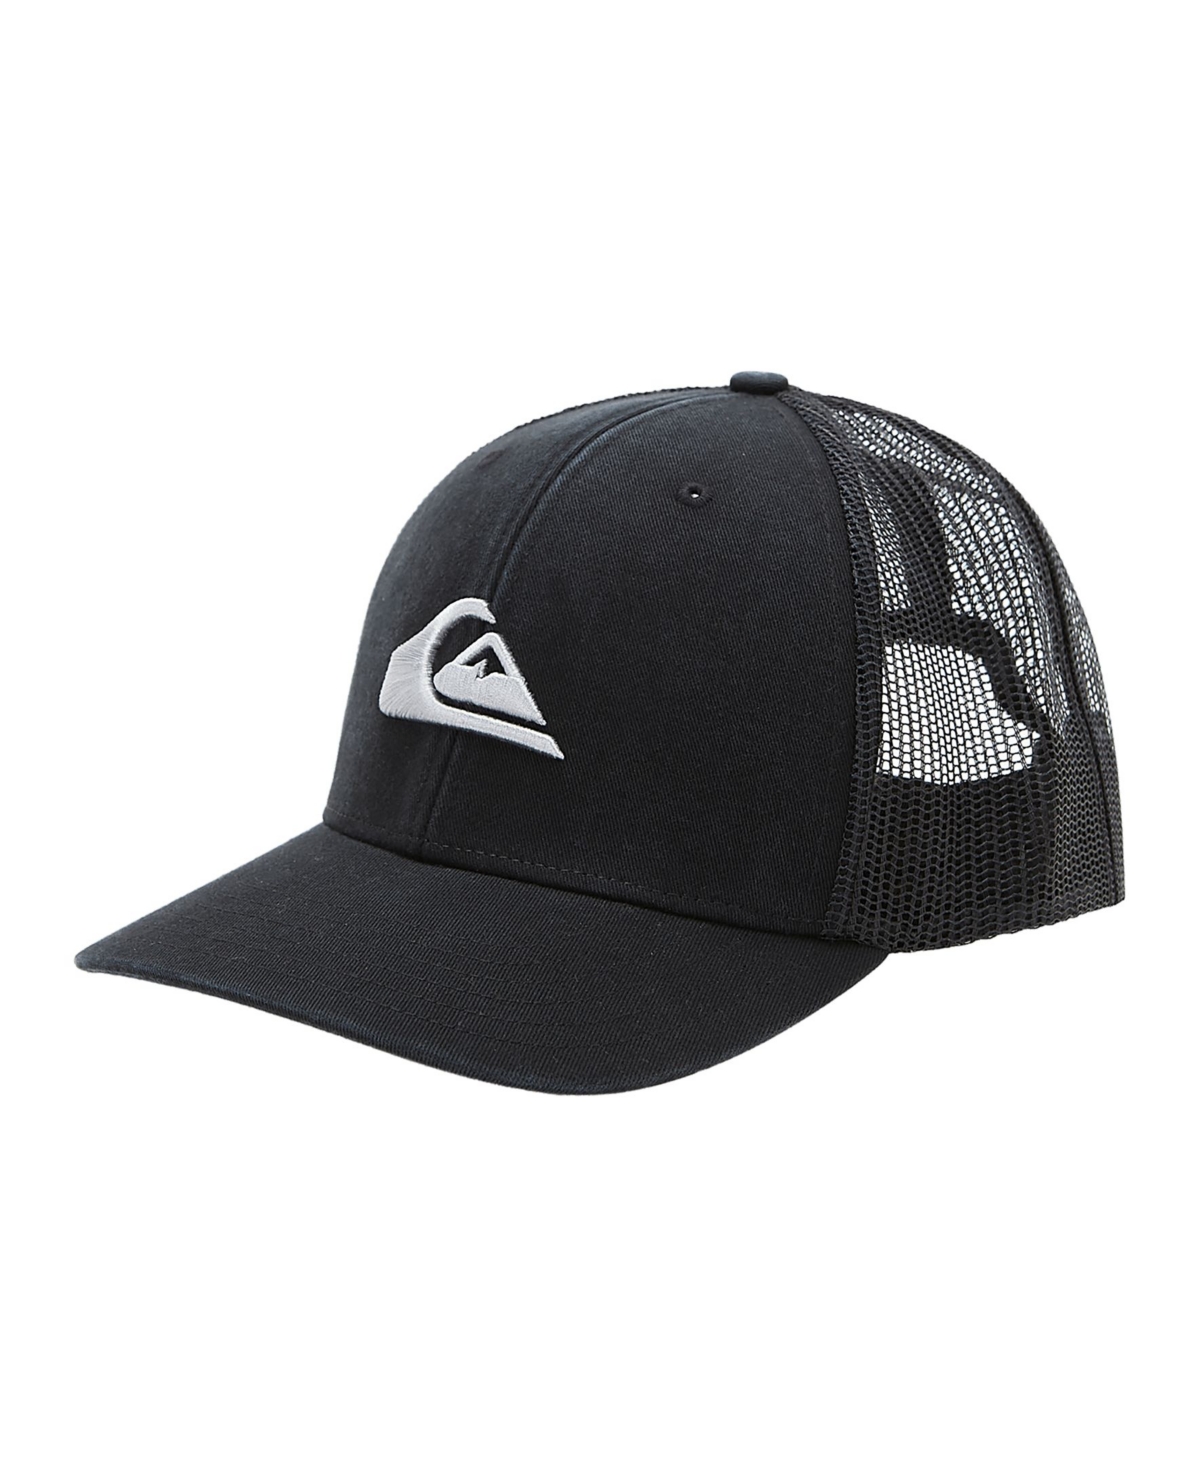 Men's Grounder Trucker Hat - Black